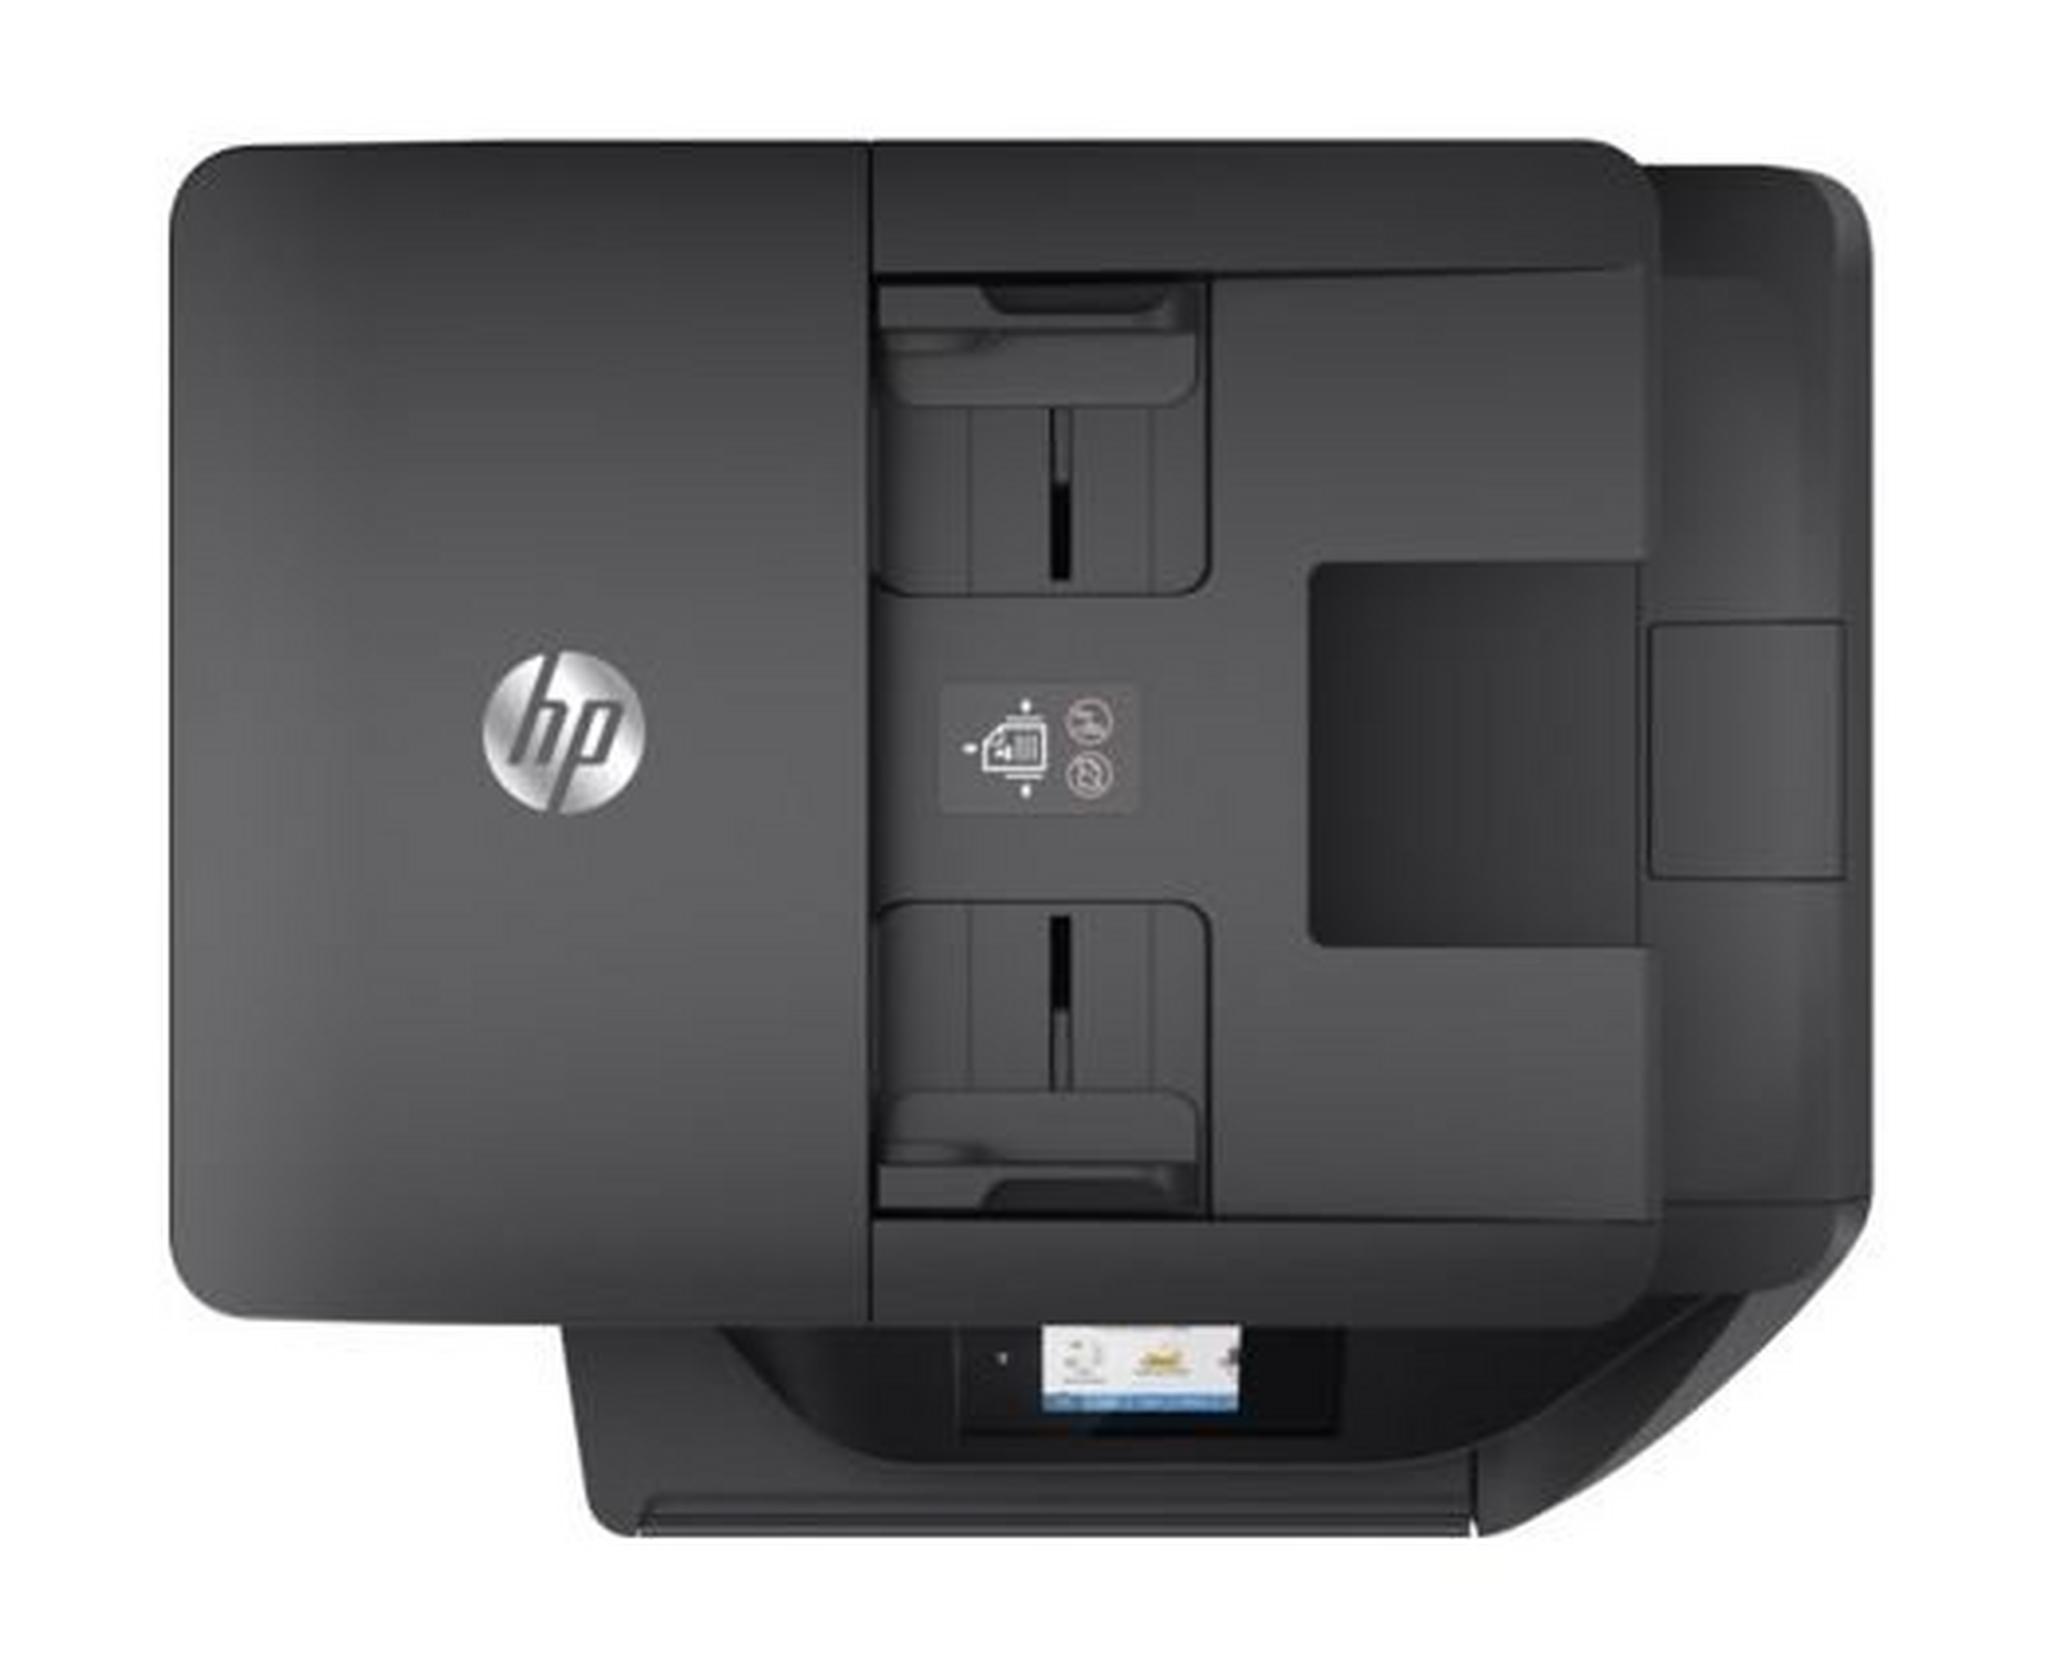 HP OfficeJet Pro 6960 All-in-One Printer (J7K33A) – Black